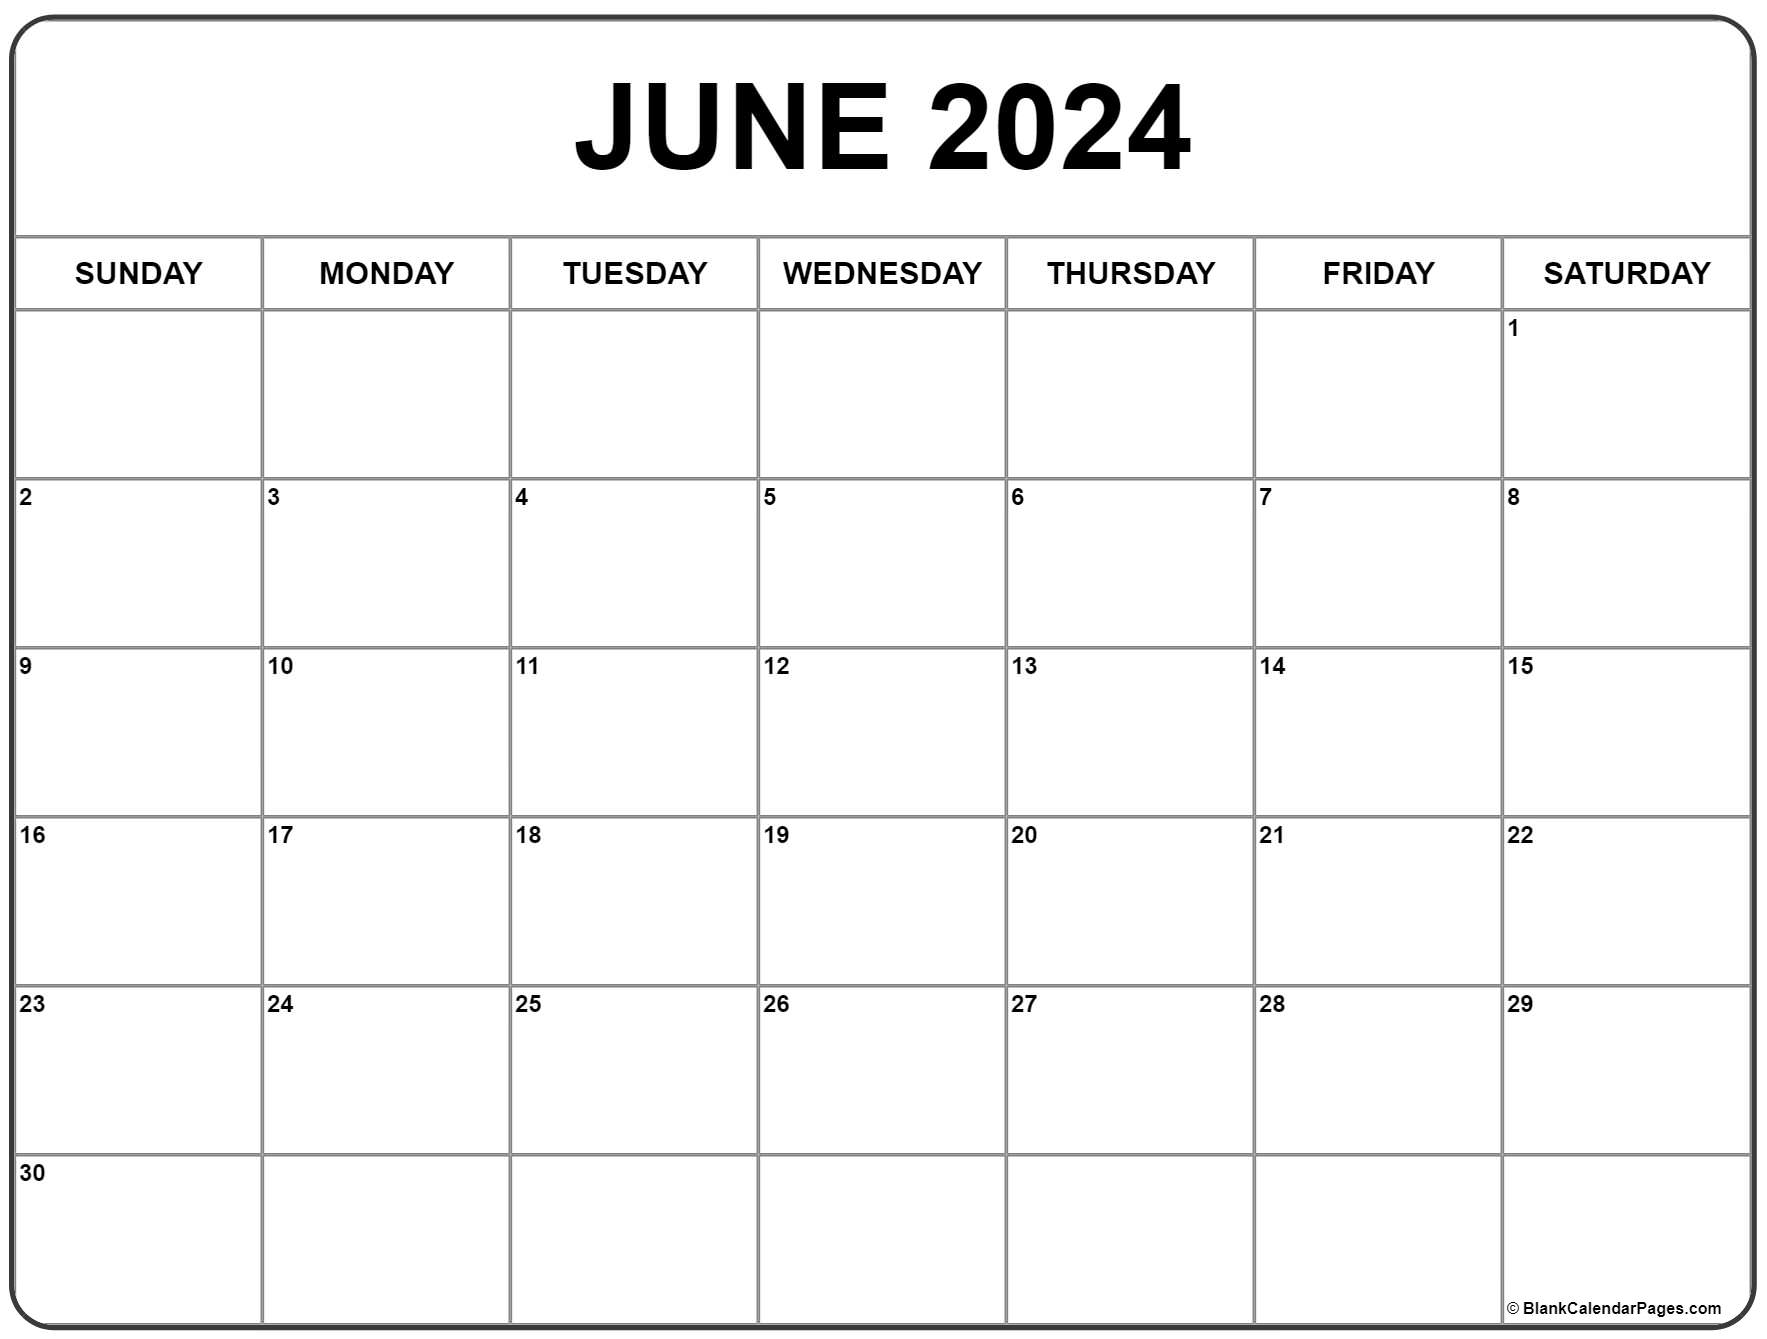 June 2024 Calendar | Free Printable Calendar for A Printable Calendar June 2024